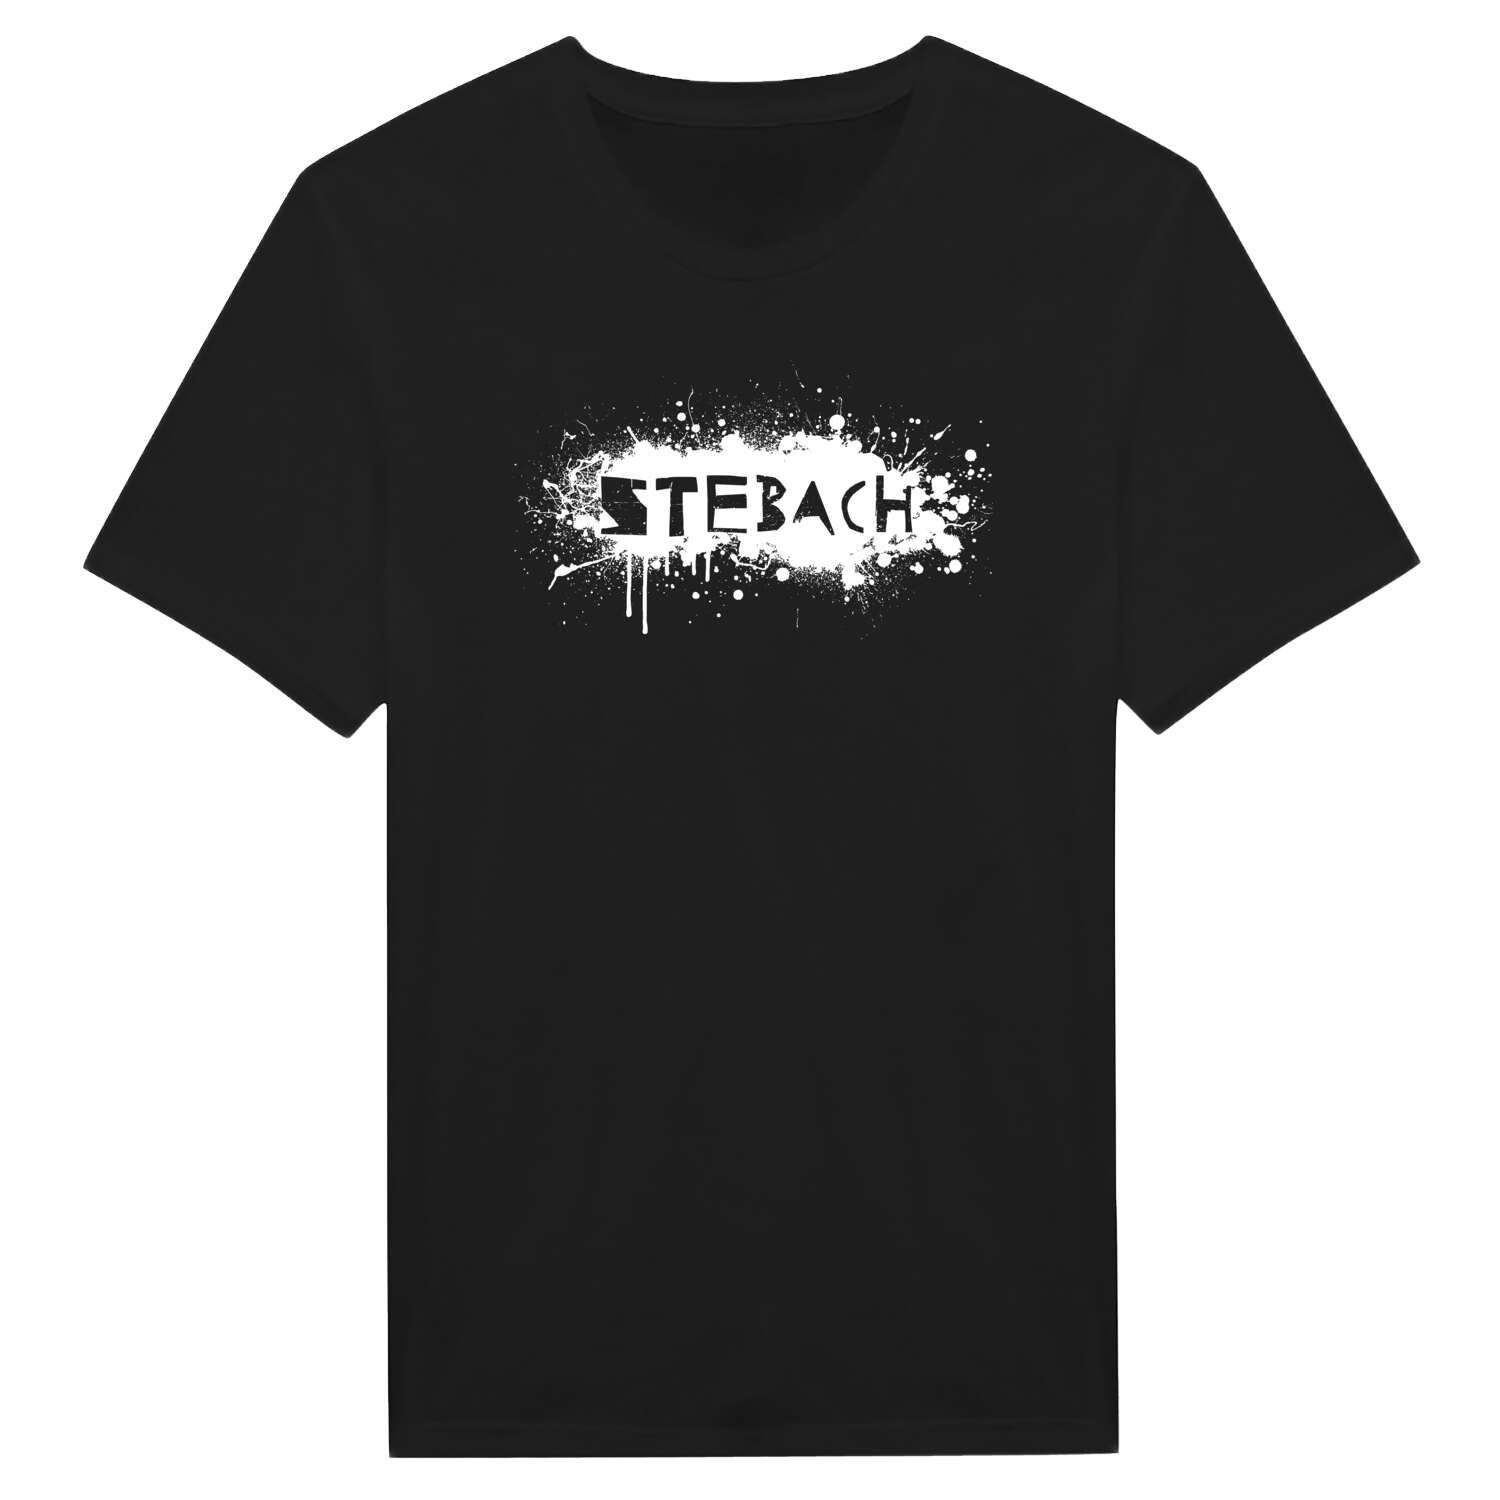 Stebach T-Shirt »Paint Splash Punk«